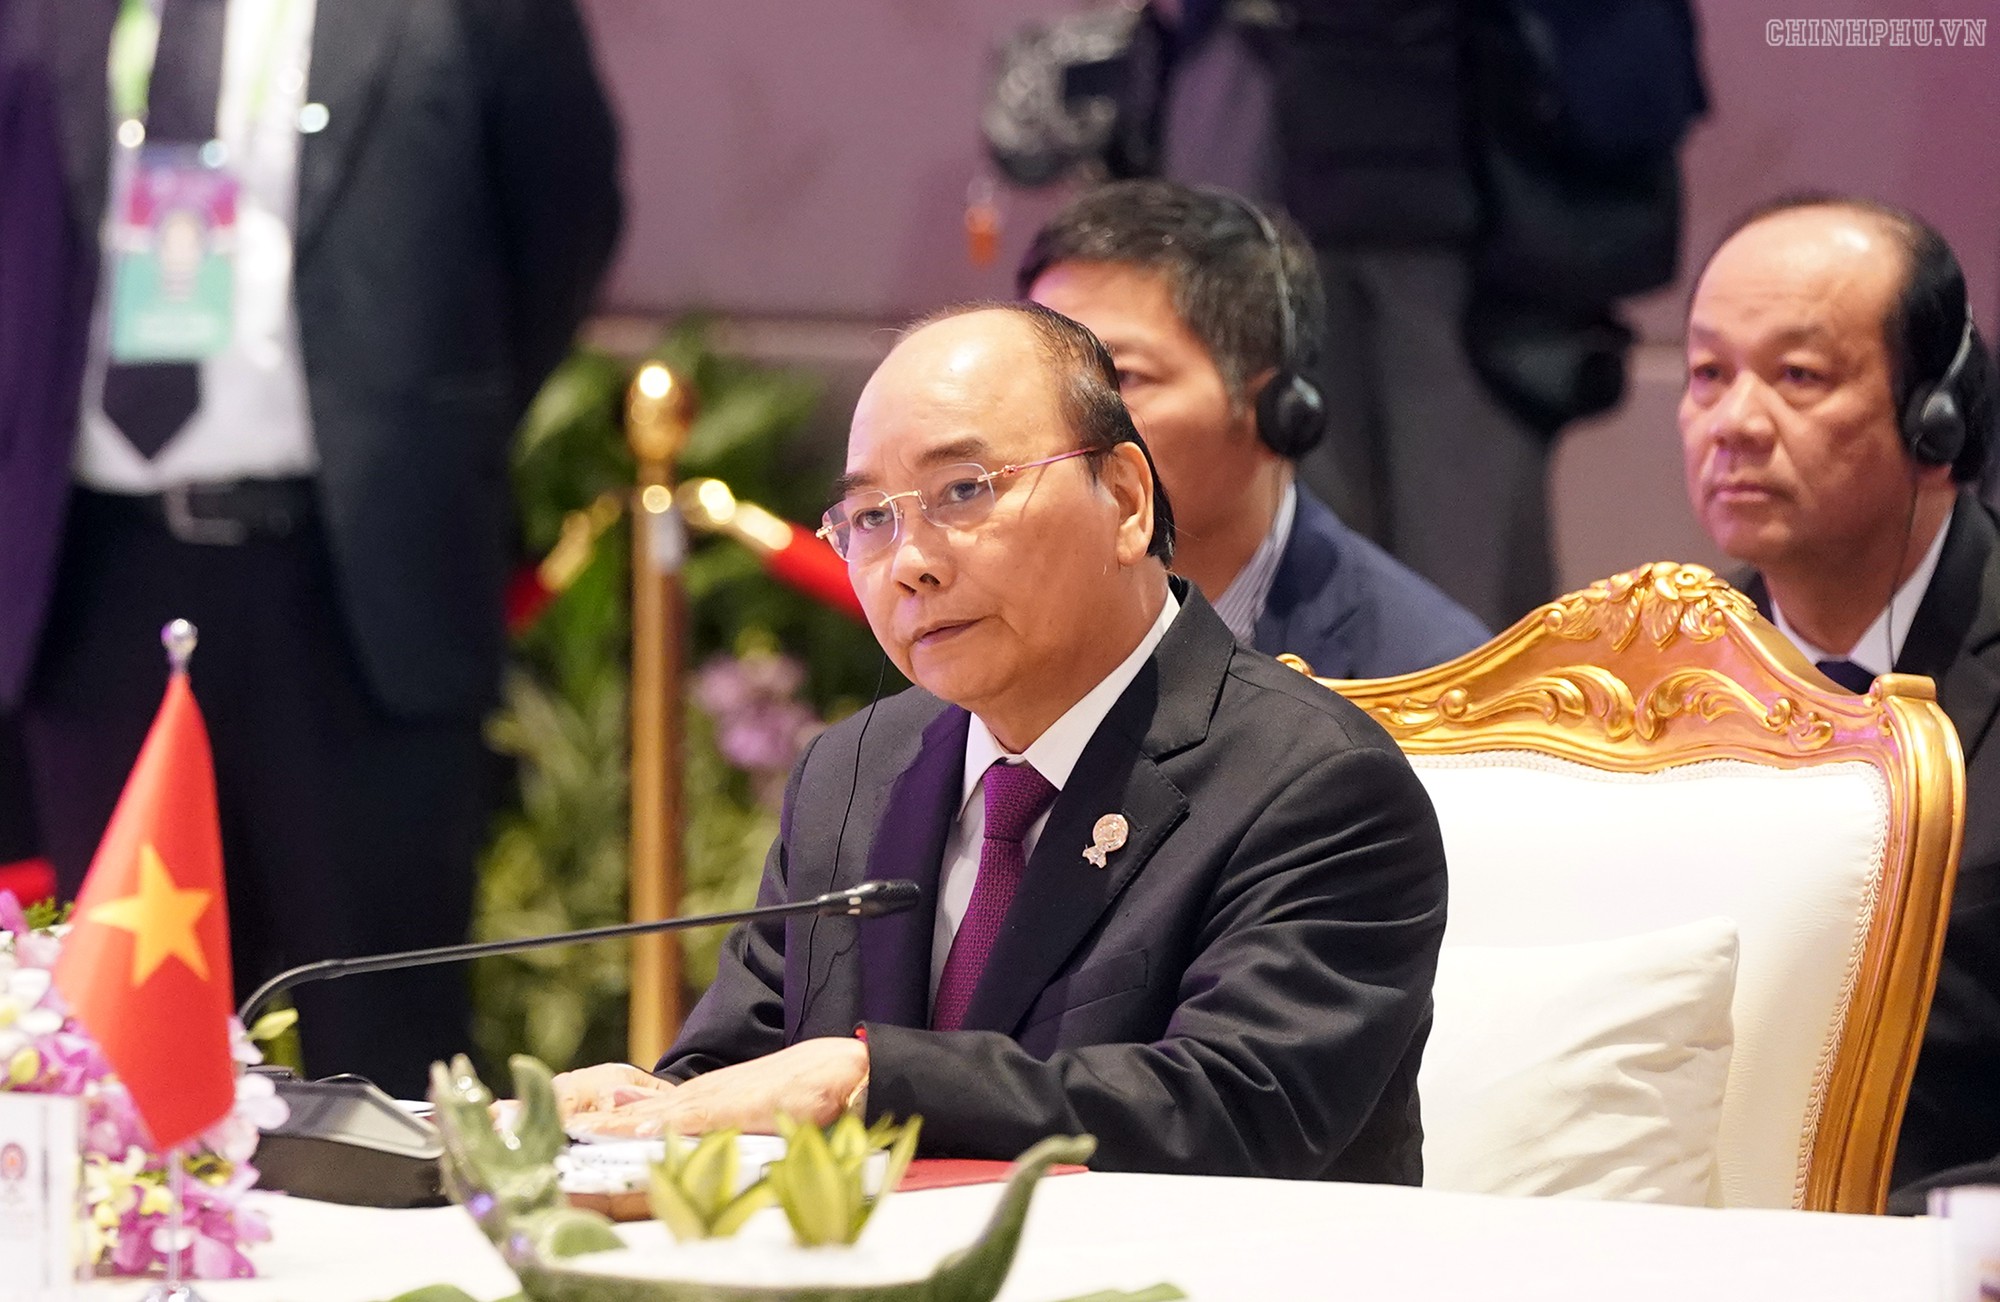 Chùm ảnh: Thủ tướng dự Hội nghị cấp cao ASEAN và gặp lãnh đạo các nước - Ảnh 6.